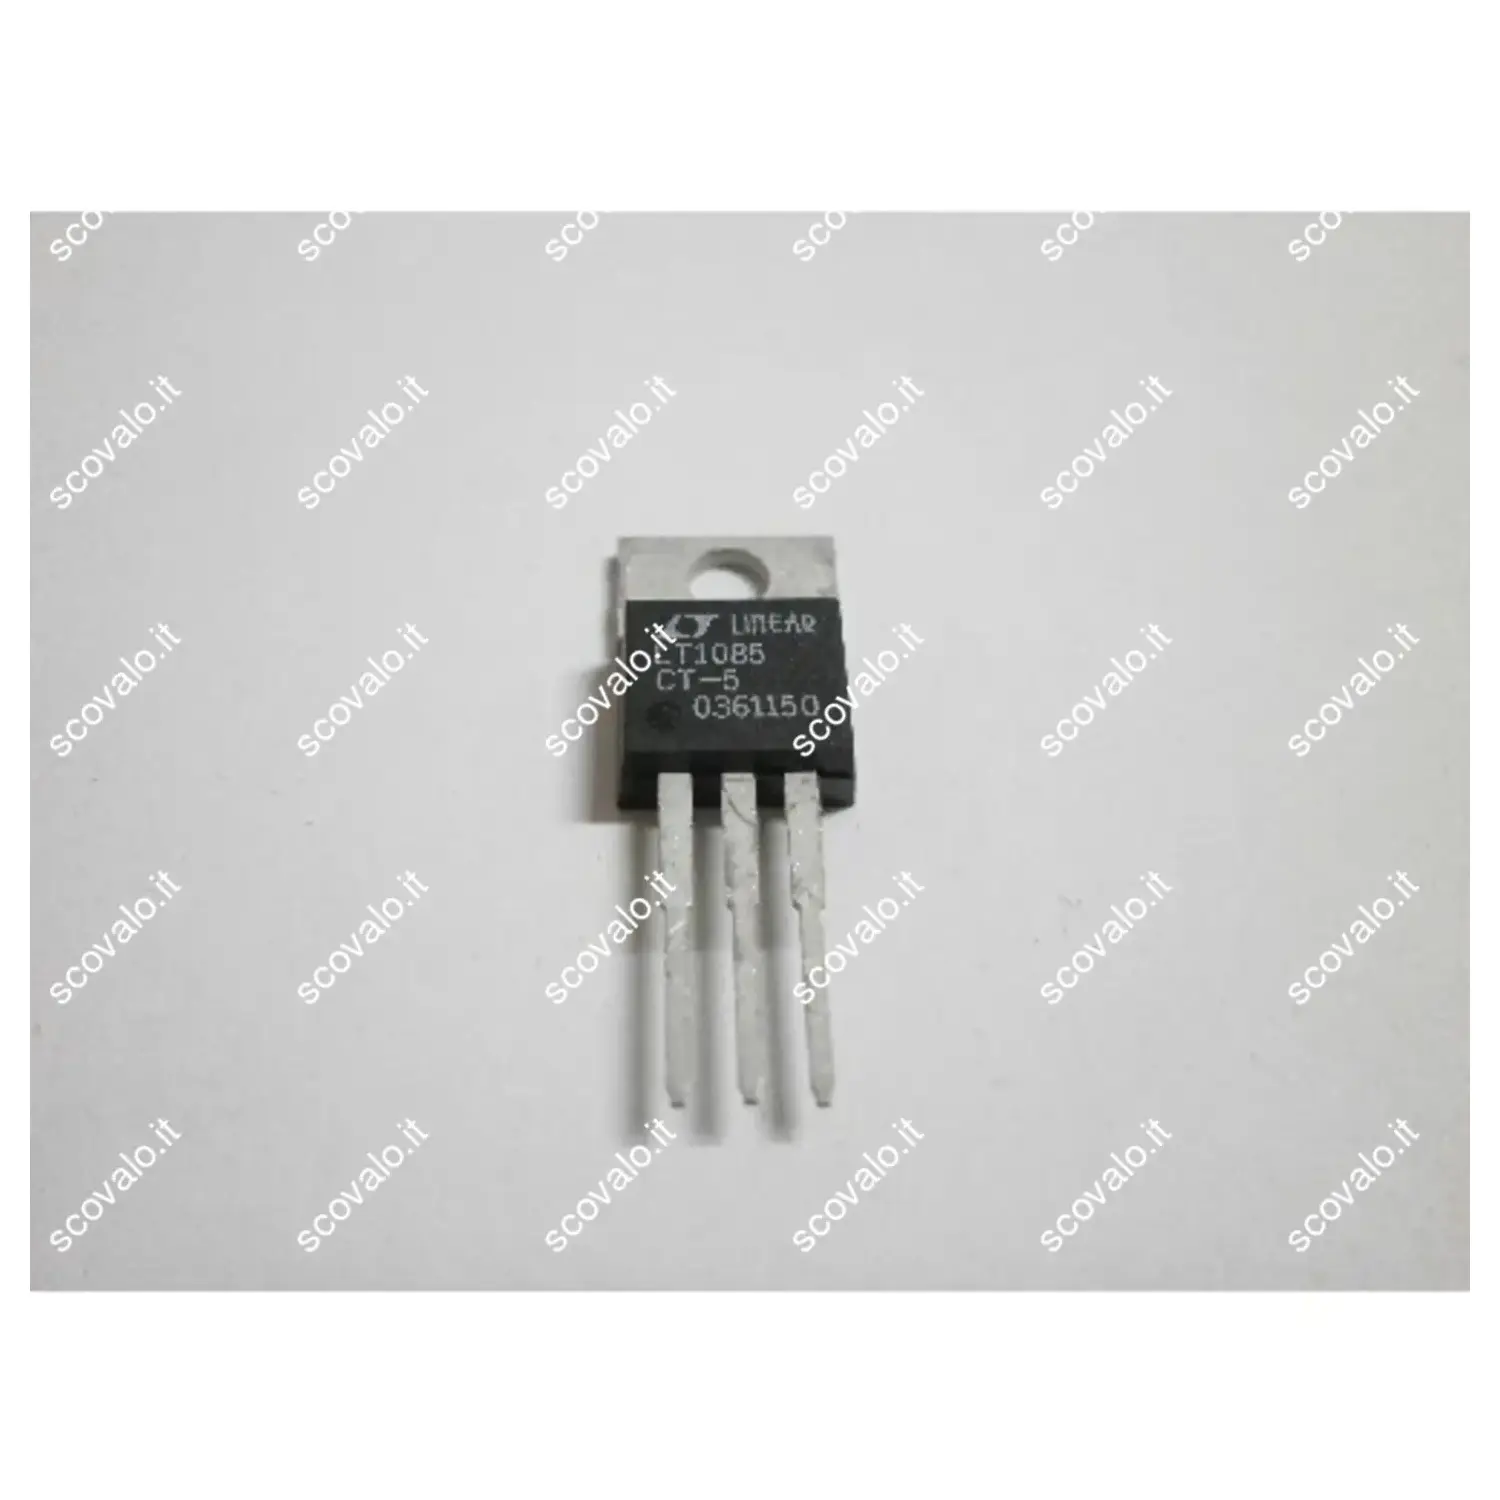 immagine del prodotto circuito integrato regolatore lt1085ct5